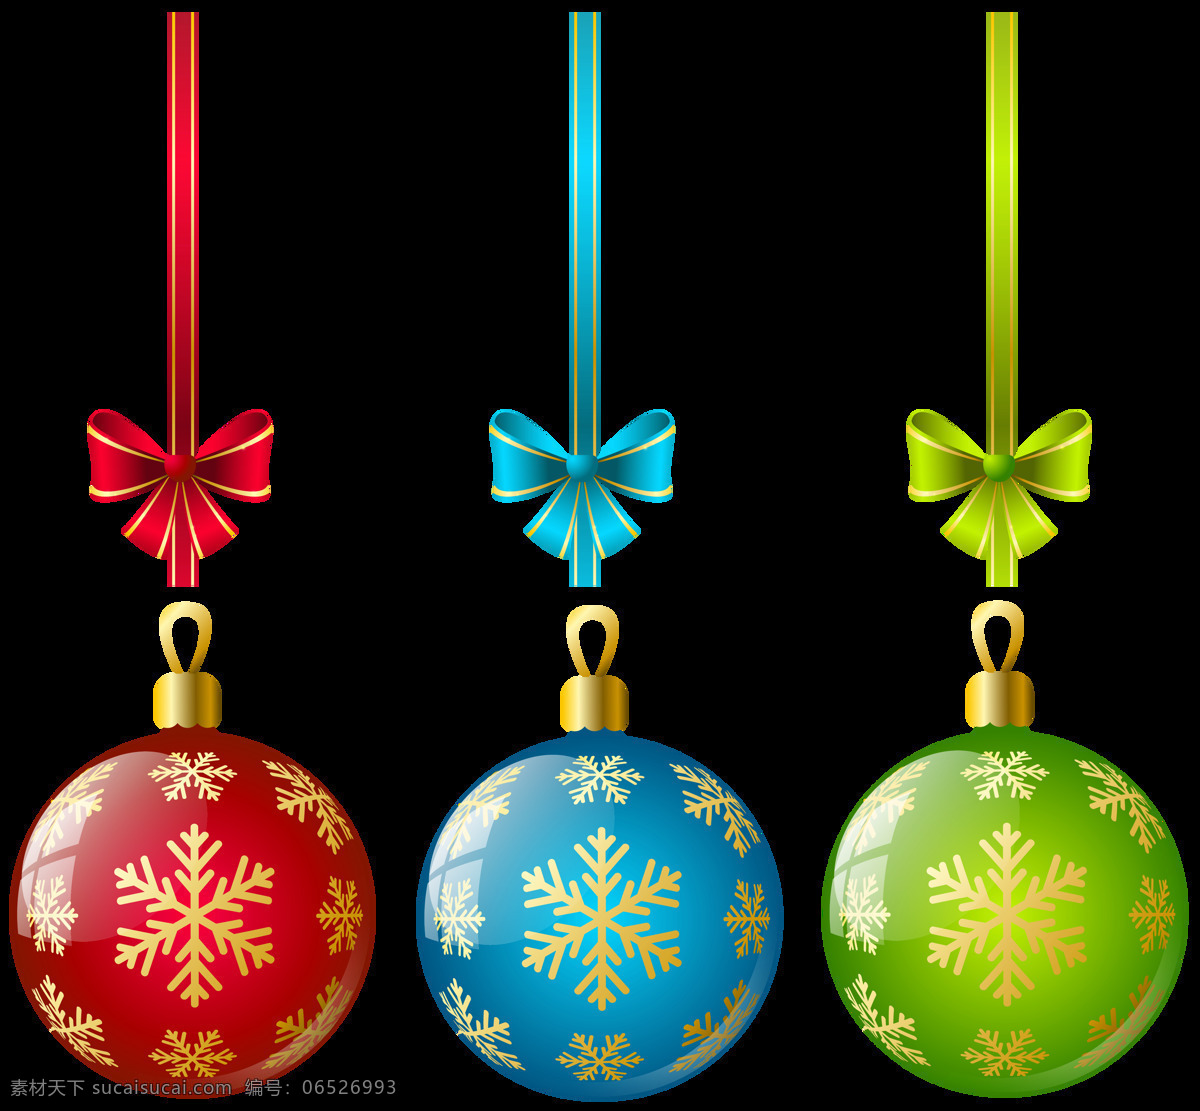 各种 颜色 圣诞球 元素 免 抠 透明 圣诞素材 圣诞元素 雪人 圣诞雪橇 圣诞老人 圣诞树 圣诞礼盒 圣诞帽 圣诞彩灯 圣诞风铃 圣诞卡片